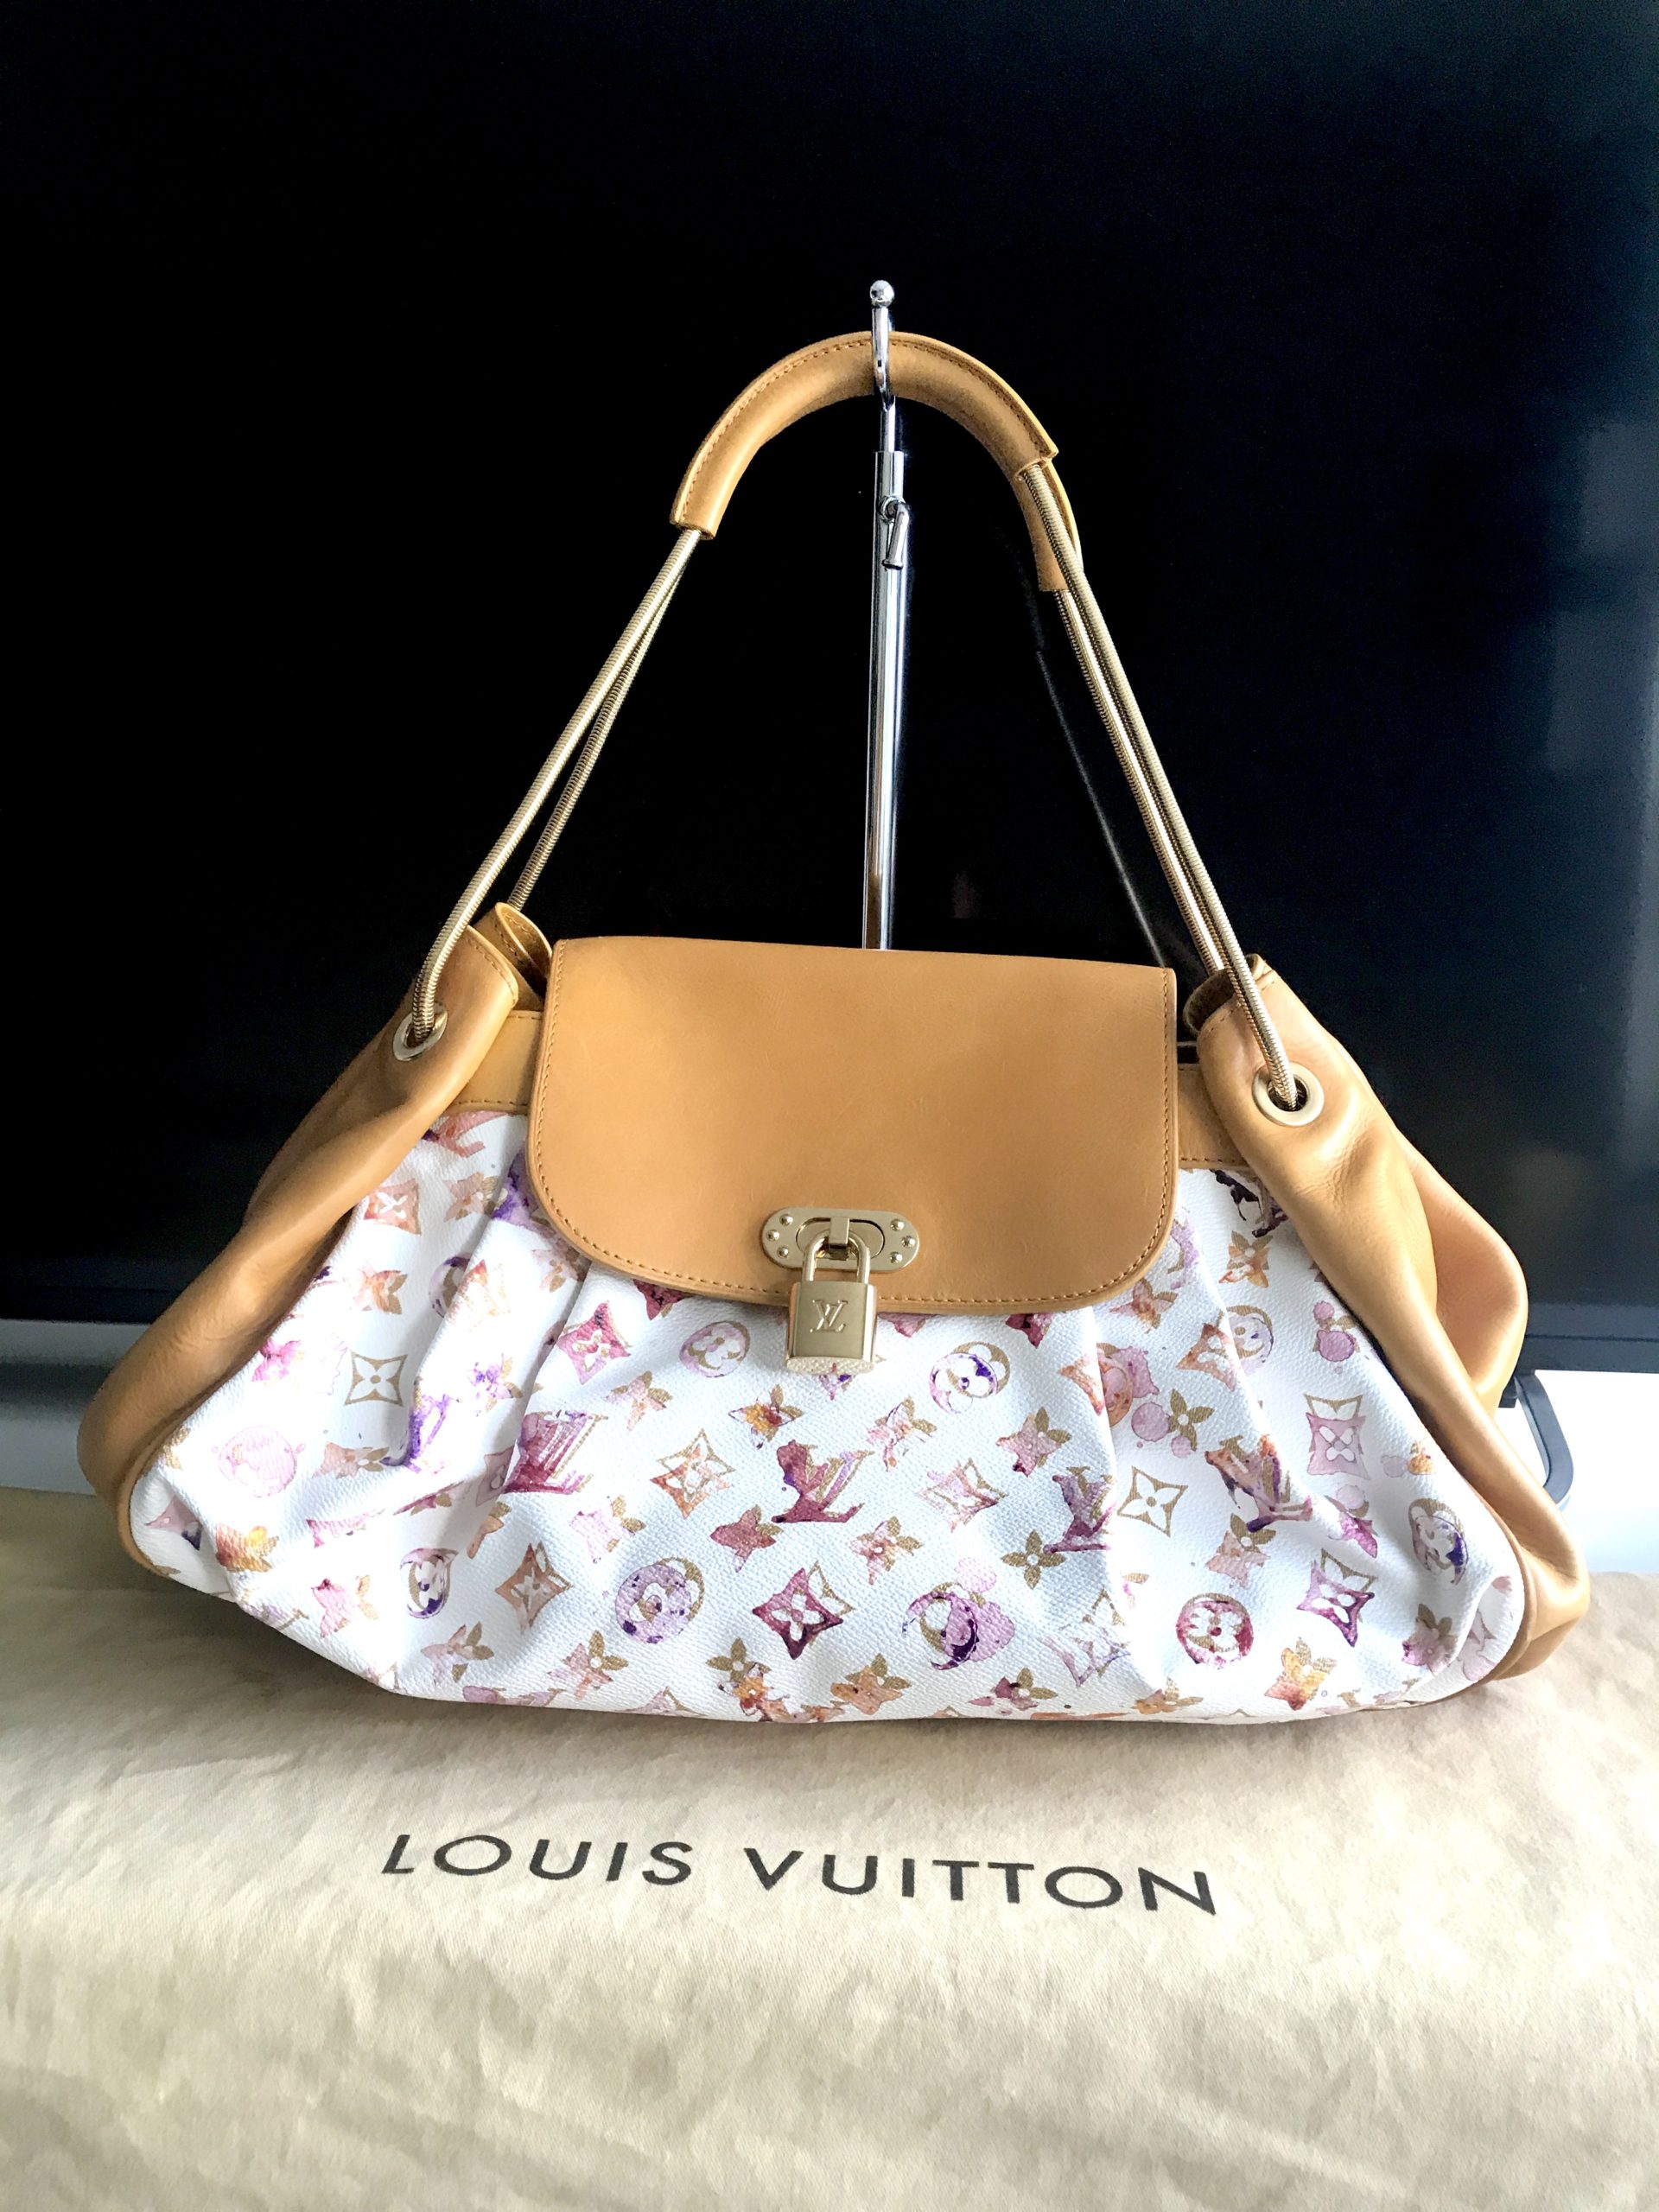 Louis Vuitton Richard Prince Watercolor Satchel Bag